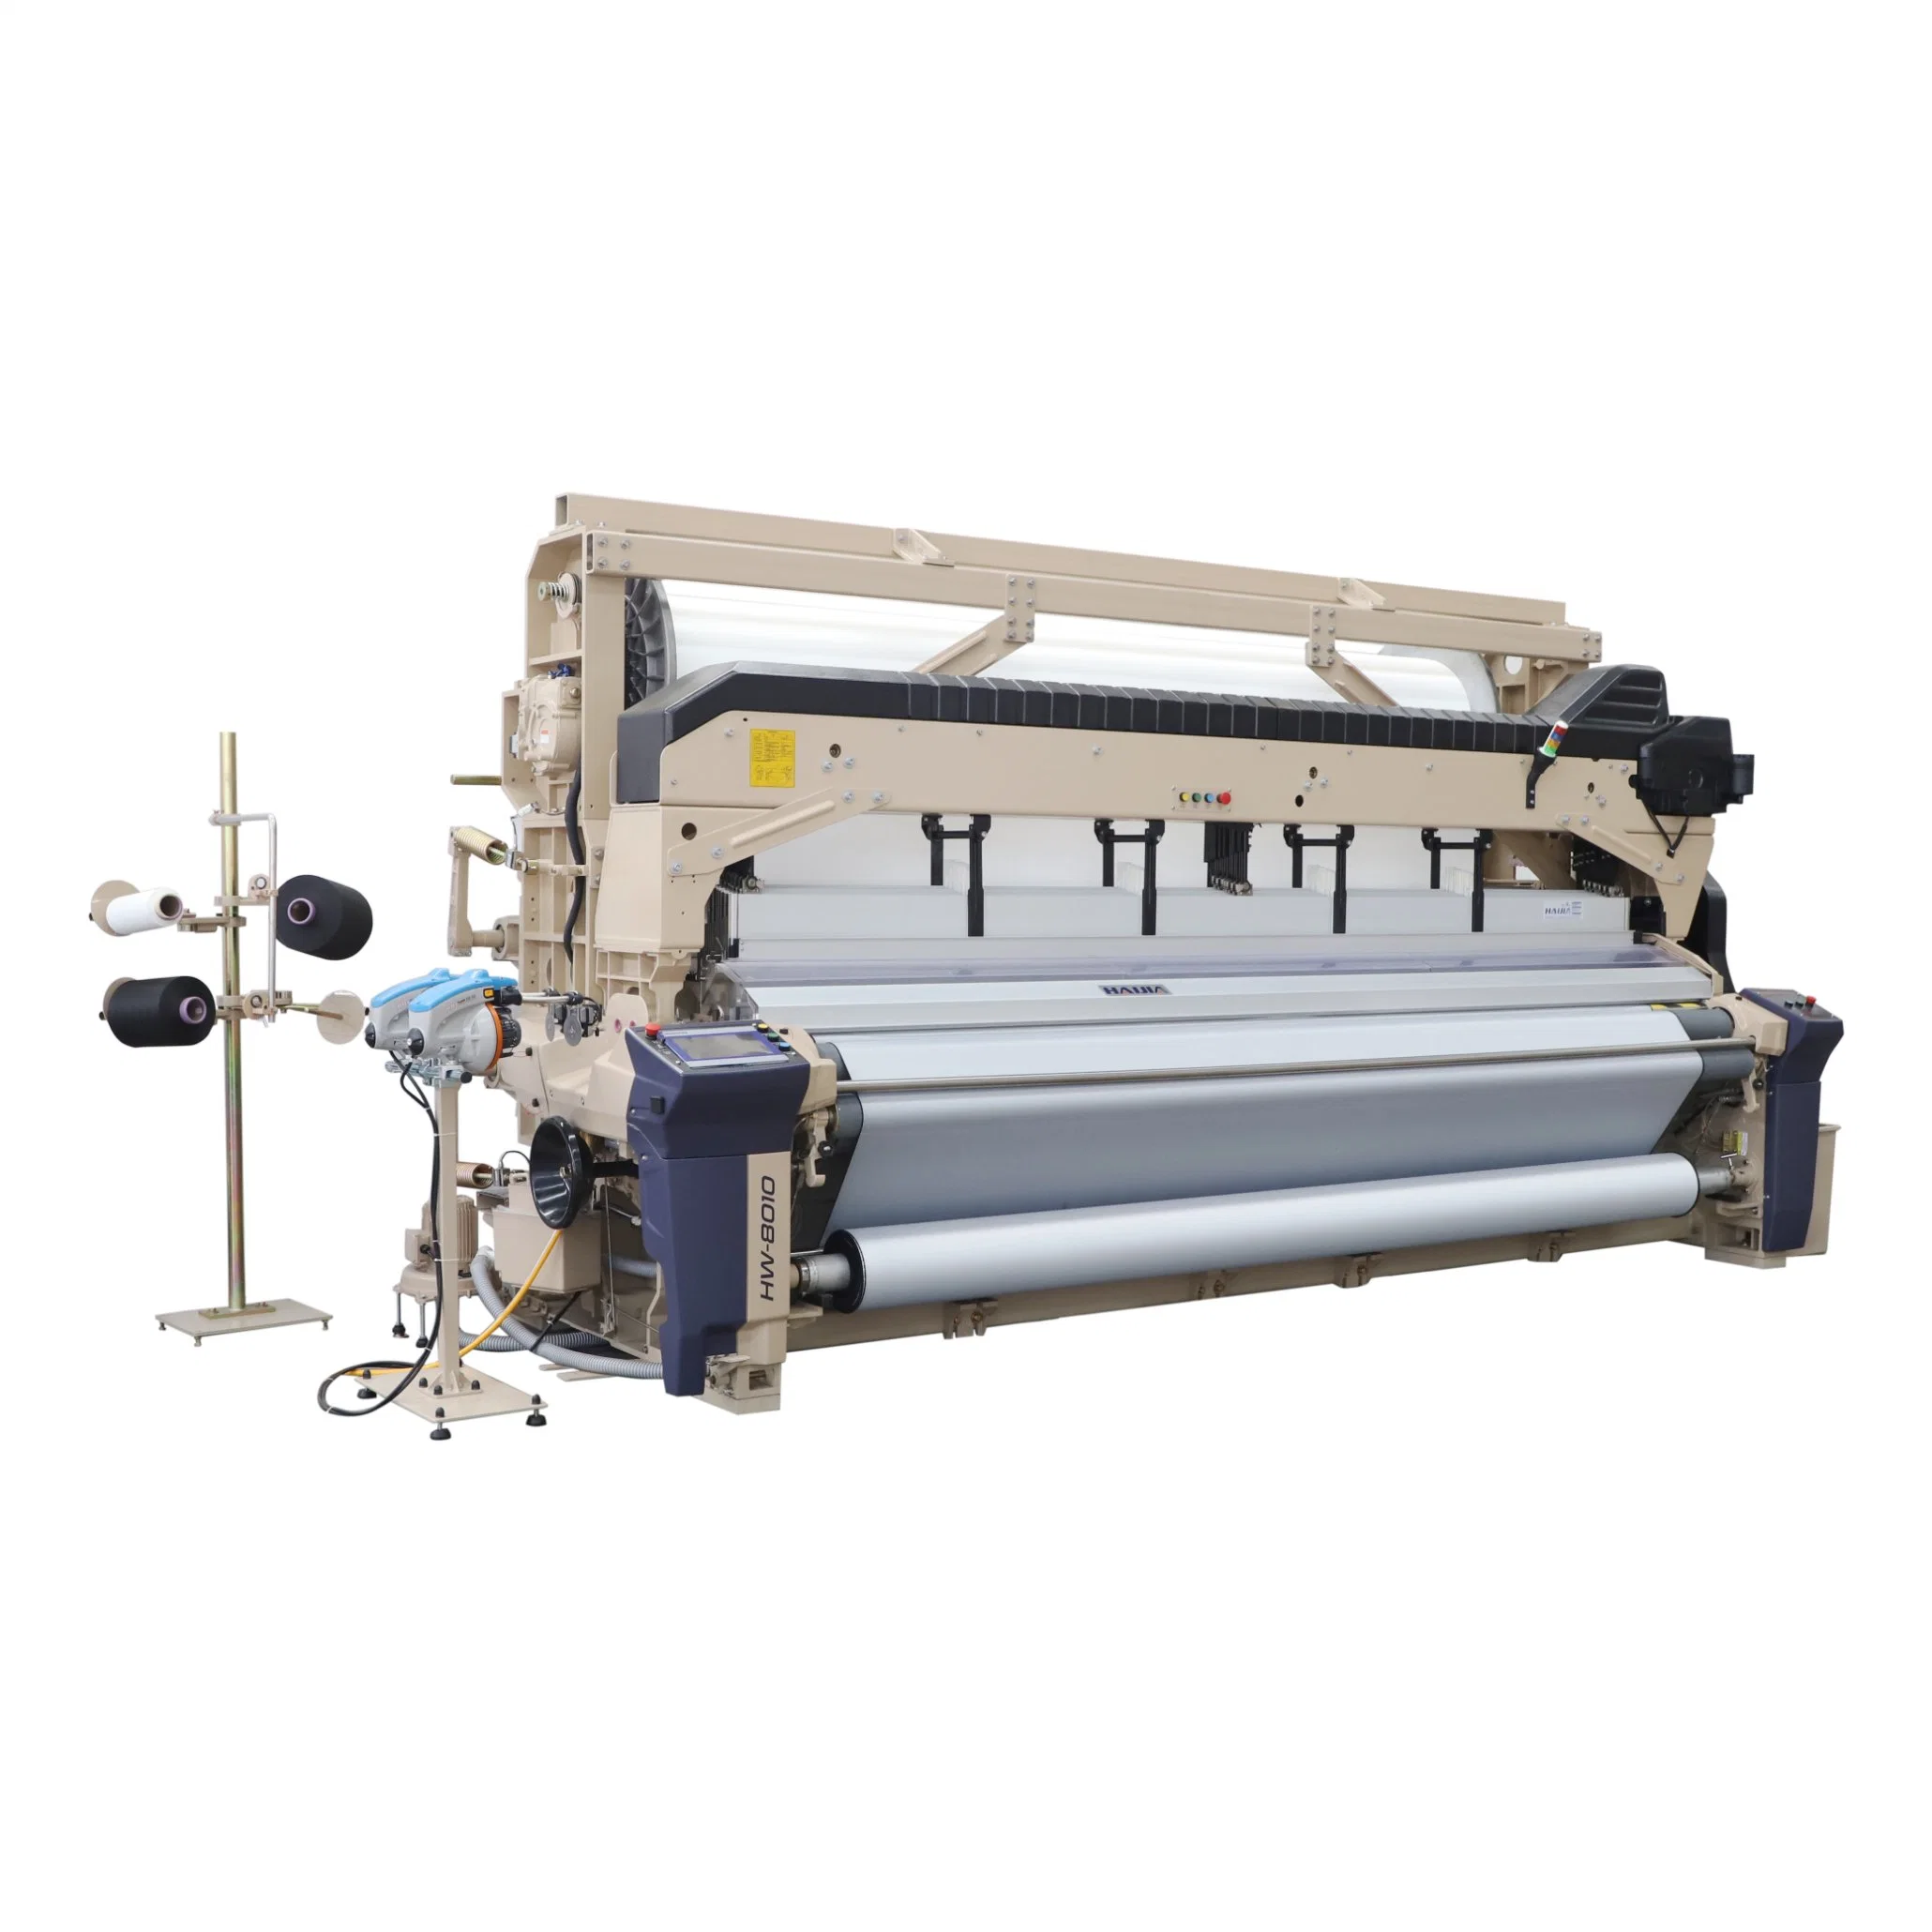 Prix de la machine de tissage de textile à jet d'eau pour la fabrication de tissus d'ameublement.